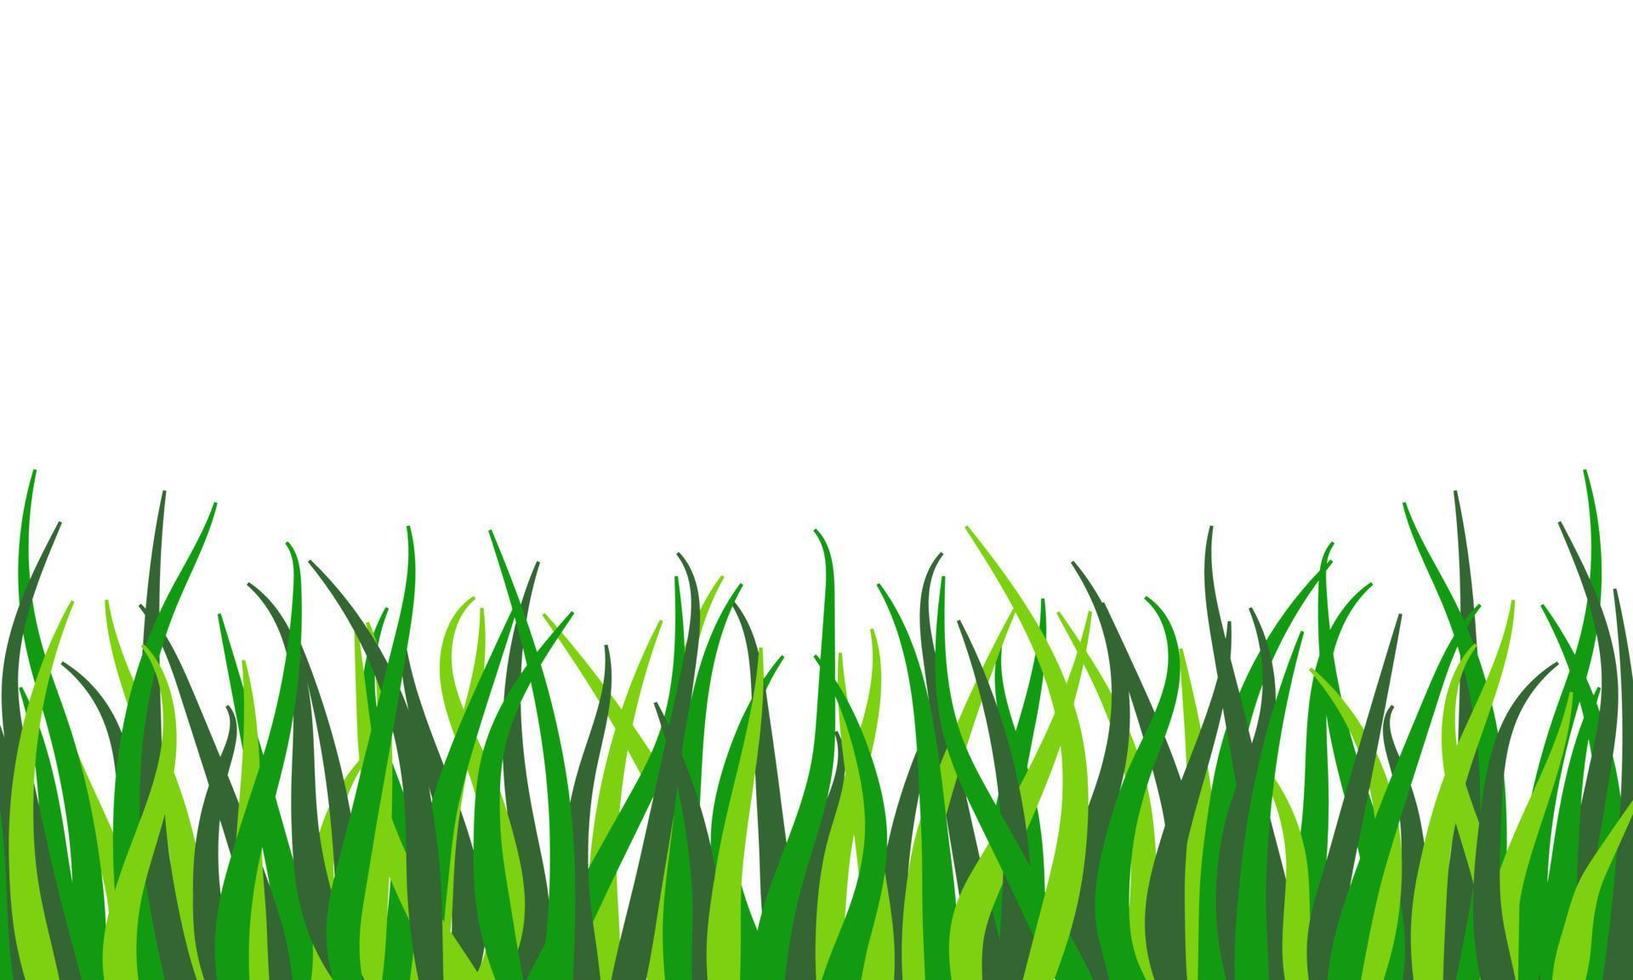 groen gras grens. voorjaar en zomer plant, veld, gazon, weide vector